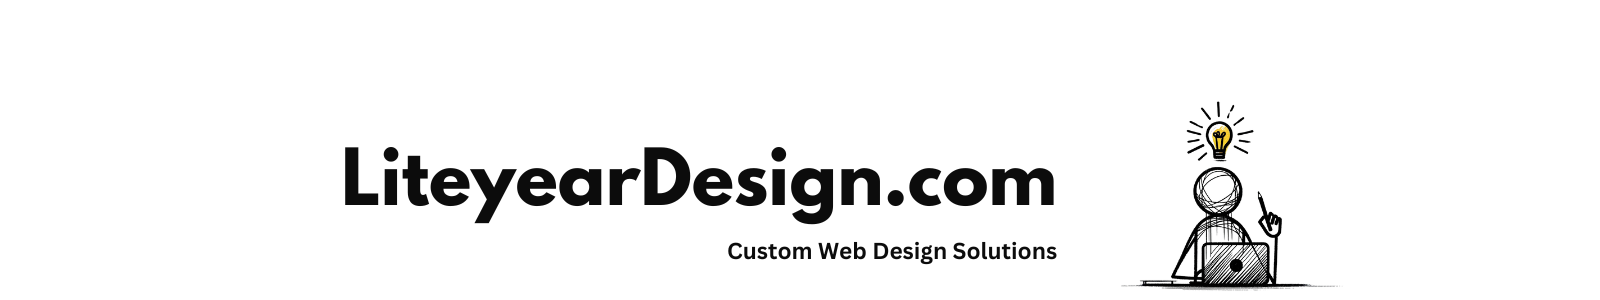 Liteyear Design Header Image